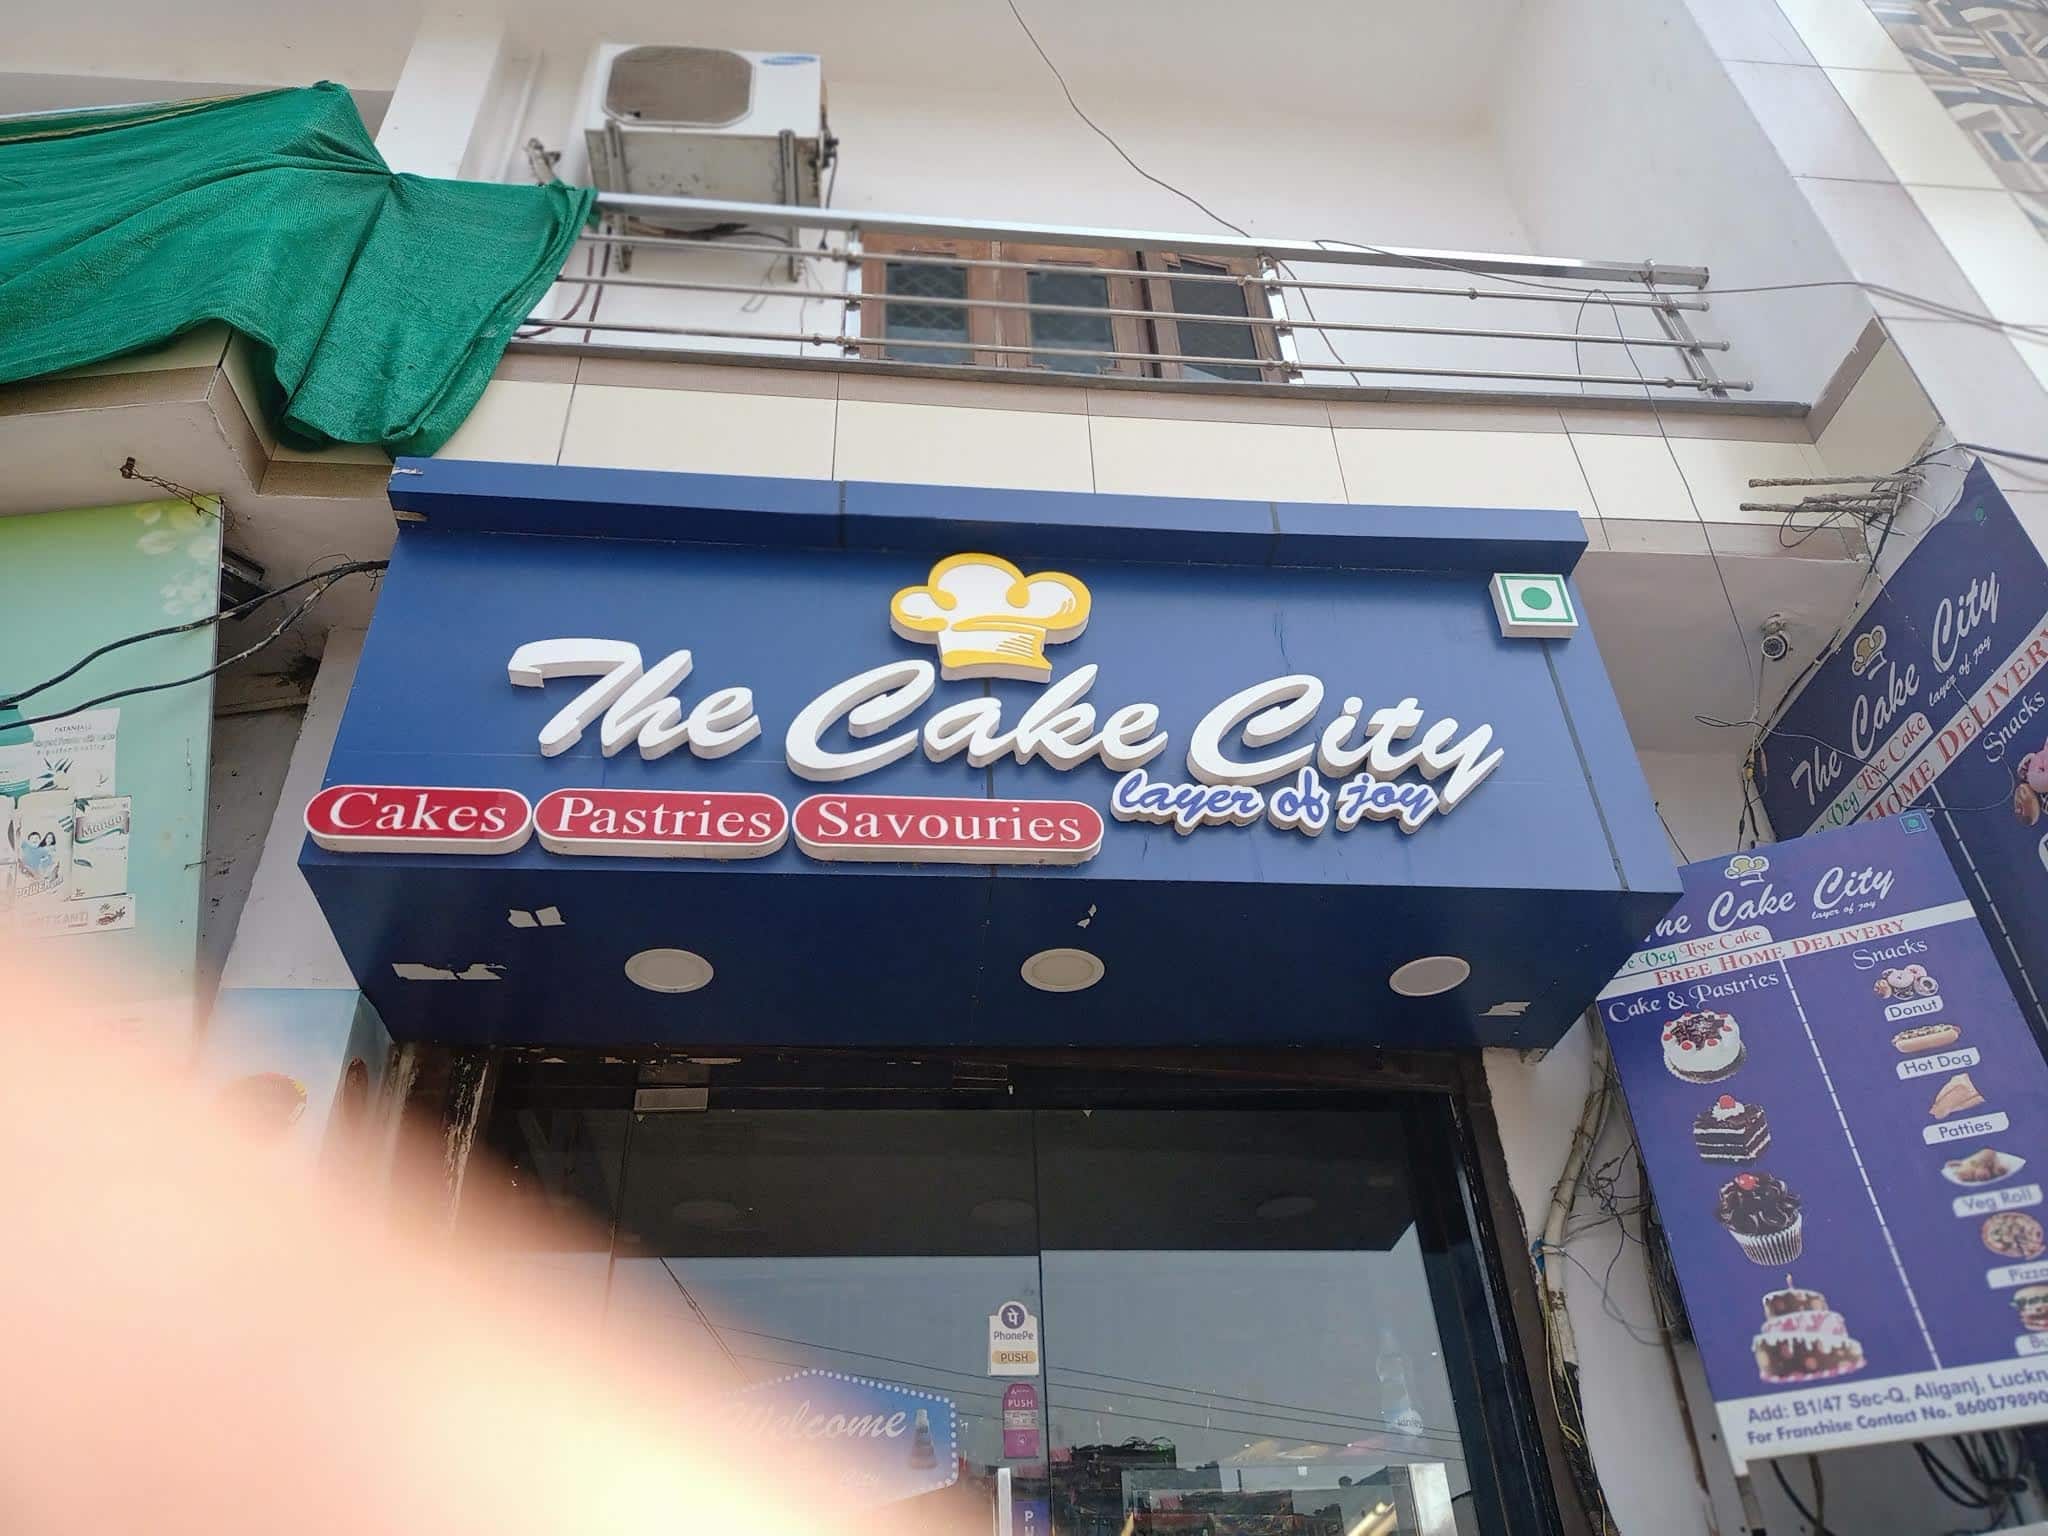 Cake Town Baker's – Restaurant in Kota, reviews and menu – Nicelocal